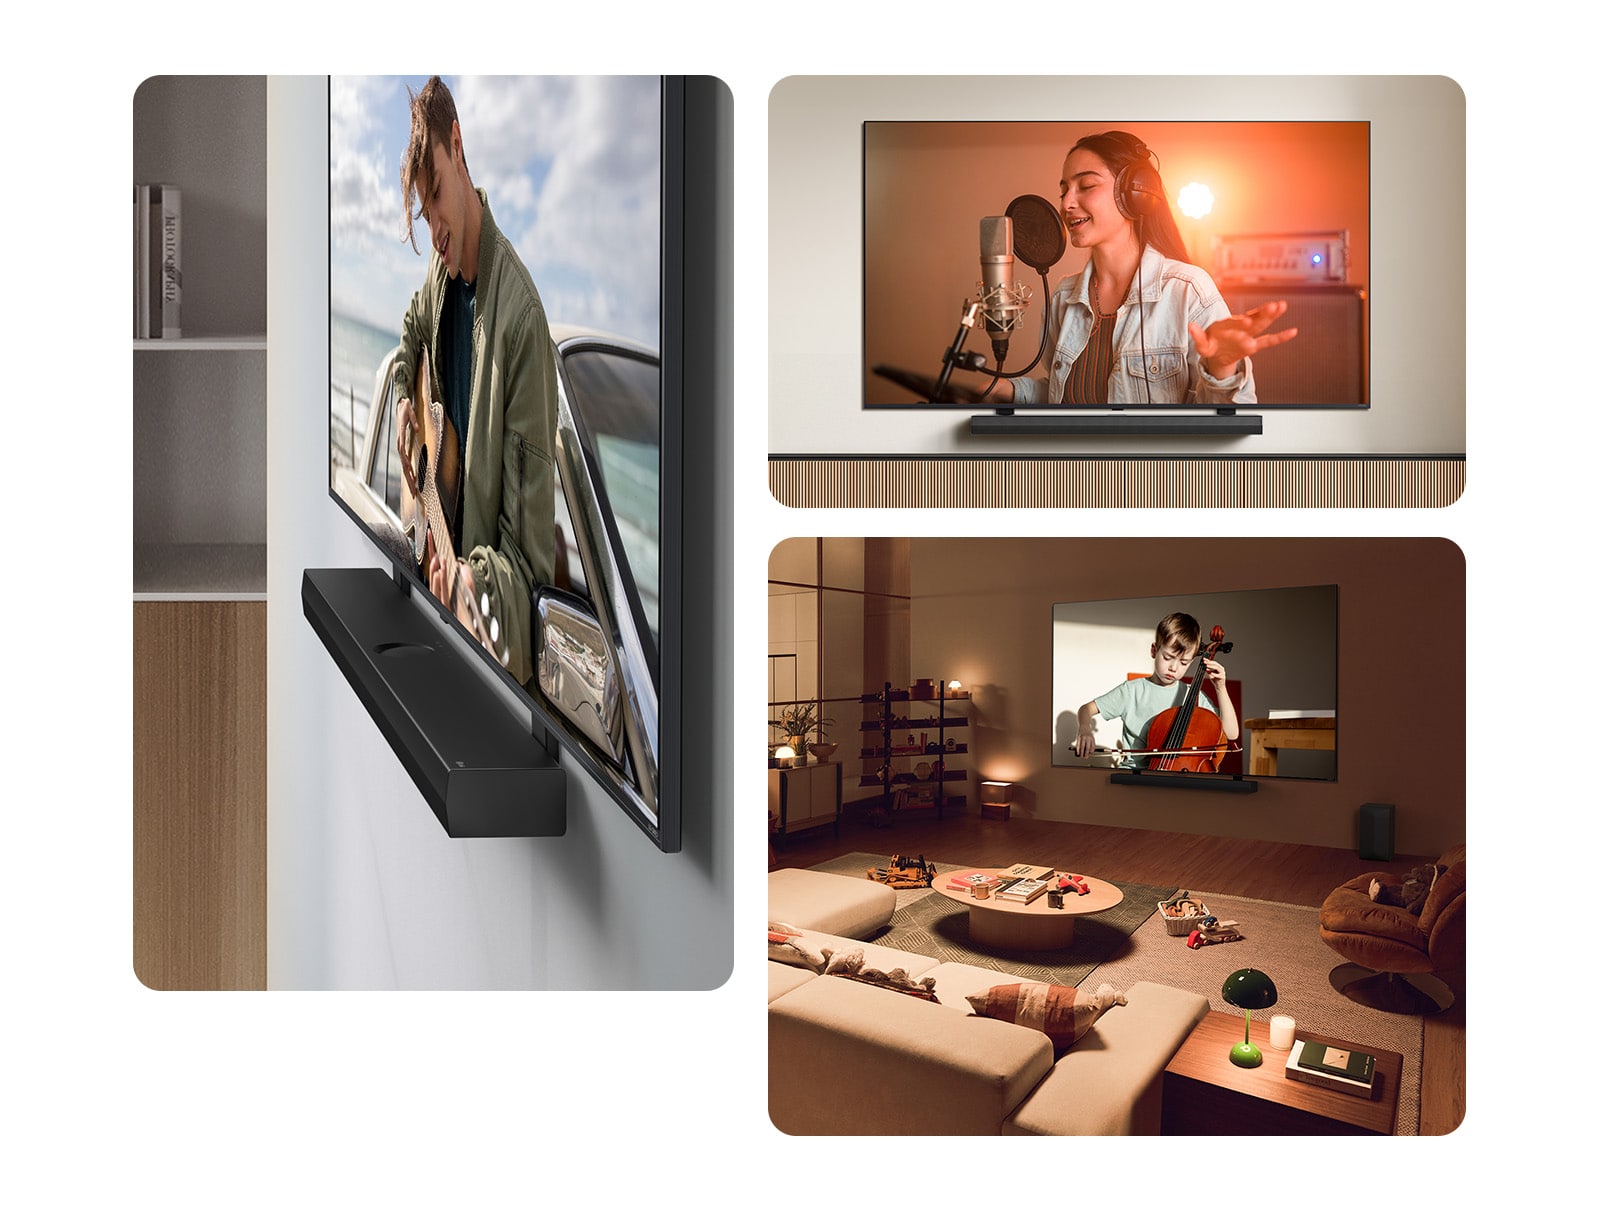 La LG Soundbar et la LG QNED TV accrochées au mur avec le crochet compatible QNED dans un salon gris et couleur bois, vues dans un plan incliné montrant un homme jouant de la guitare.  La LG Soundbar et la LG QNED TV contre un mur couleur crème avec le crochet QNED TV correspondant. La TV diffuse la vidéo d’une femme dans un studio d’enregistrement. En-dessous de la TV se trouve un support en bois moderne de forme géométrique.   La LG Soundbar et la LG QNED TV sur un mur avec le crochet QNED TV correspondant dans un espace de vie confortable et à l’éclairage tamisé, avec des jouets d'enfants. La TV diffuse la vidéo d’un petit garçon en train de jouer du violoncelle. 